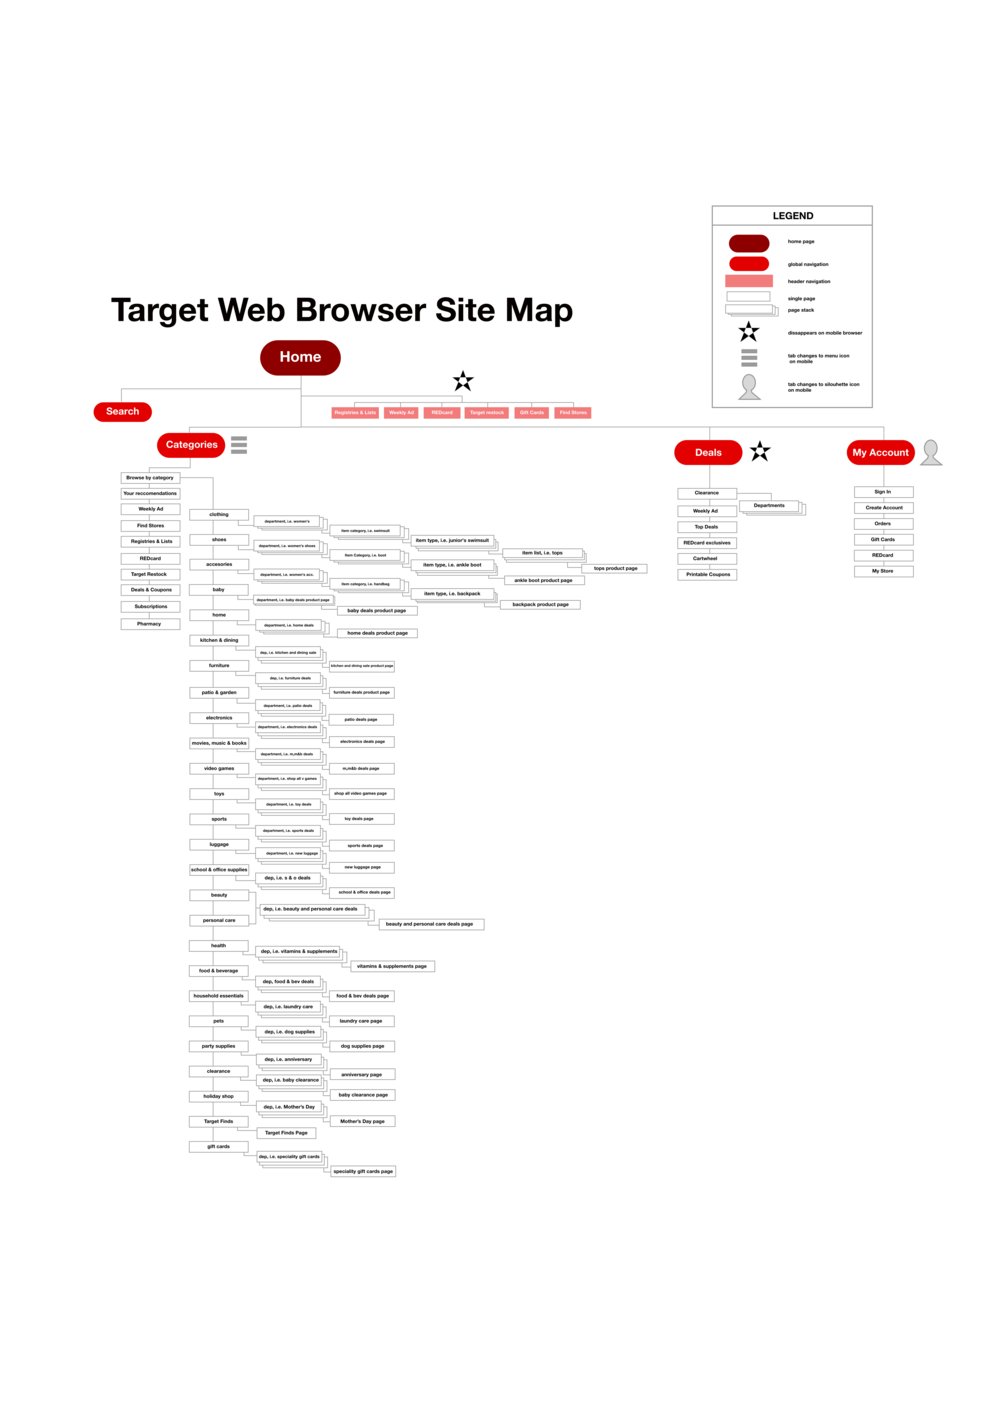  Target.com - Site Map, Original 